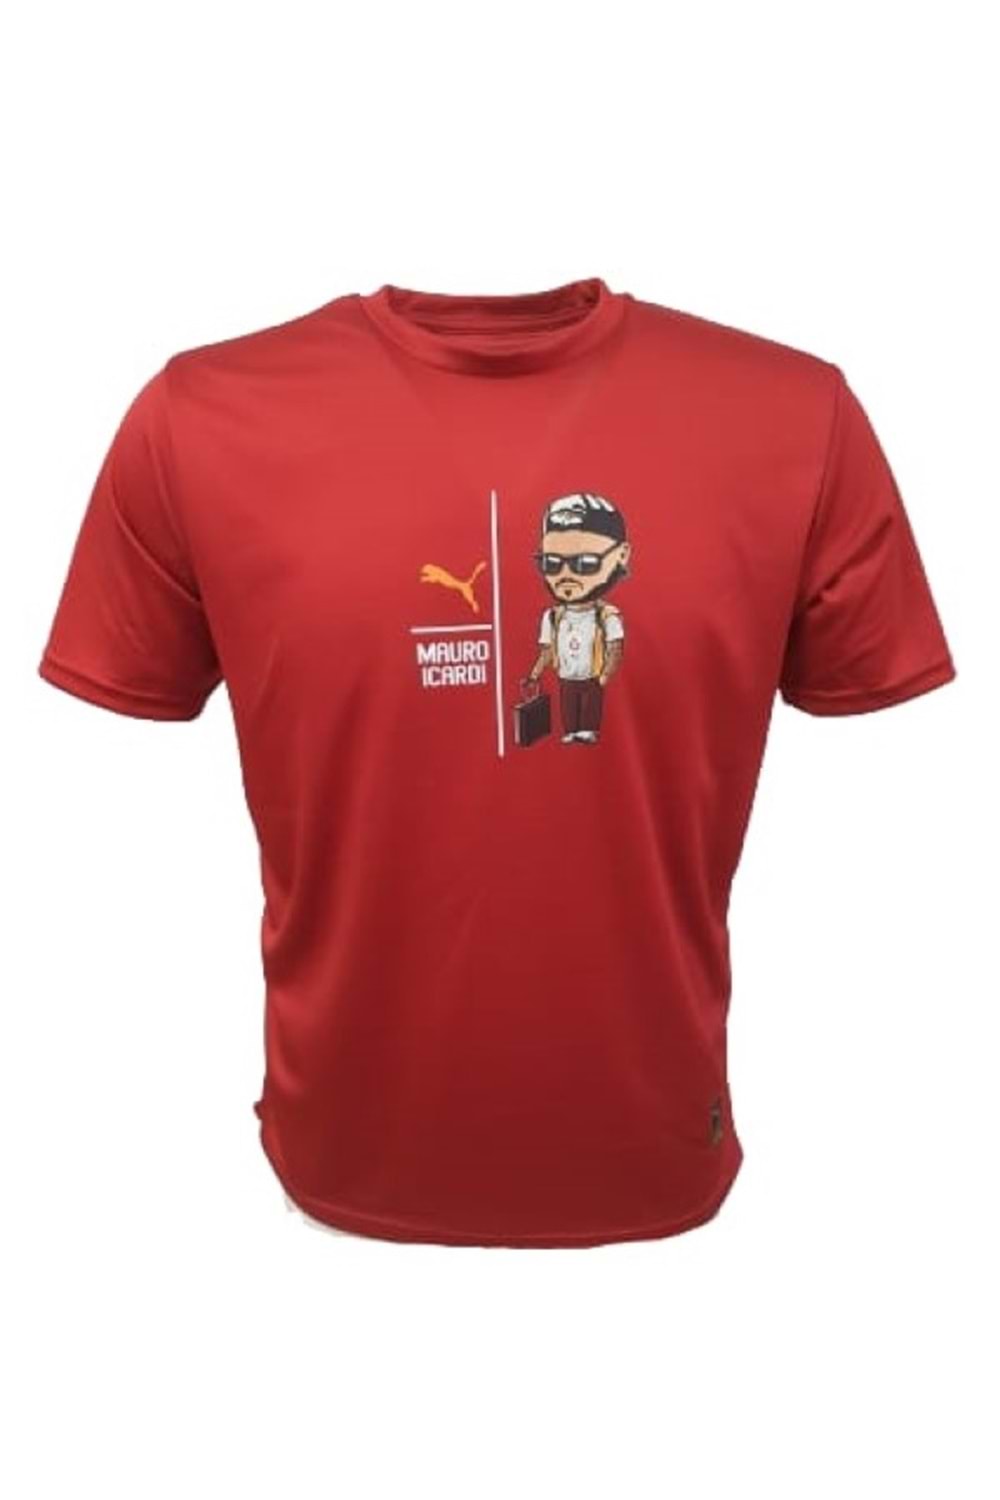 Mtn M02293 Mauro Icardi OversizeTasarım Baskılı Kısa Kol T-shirt - Kırmızı